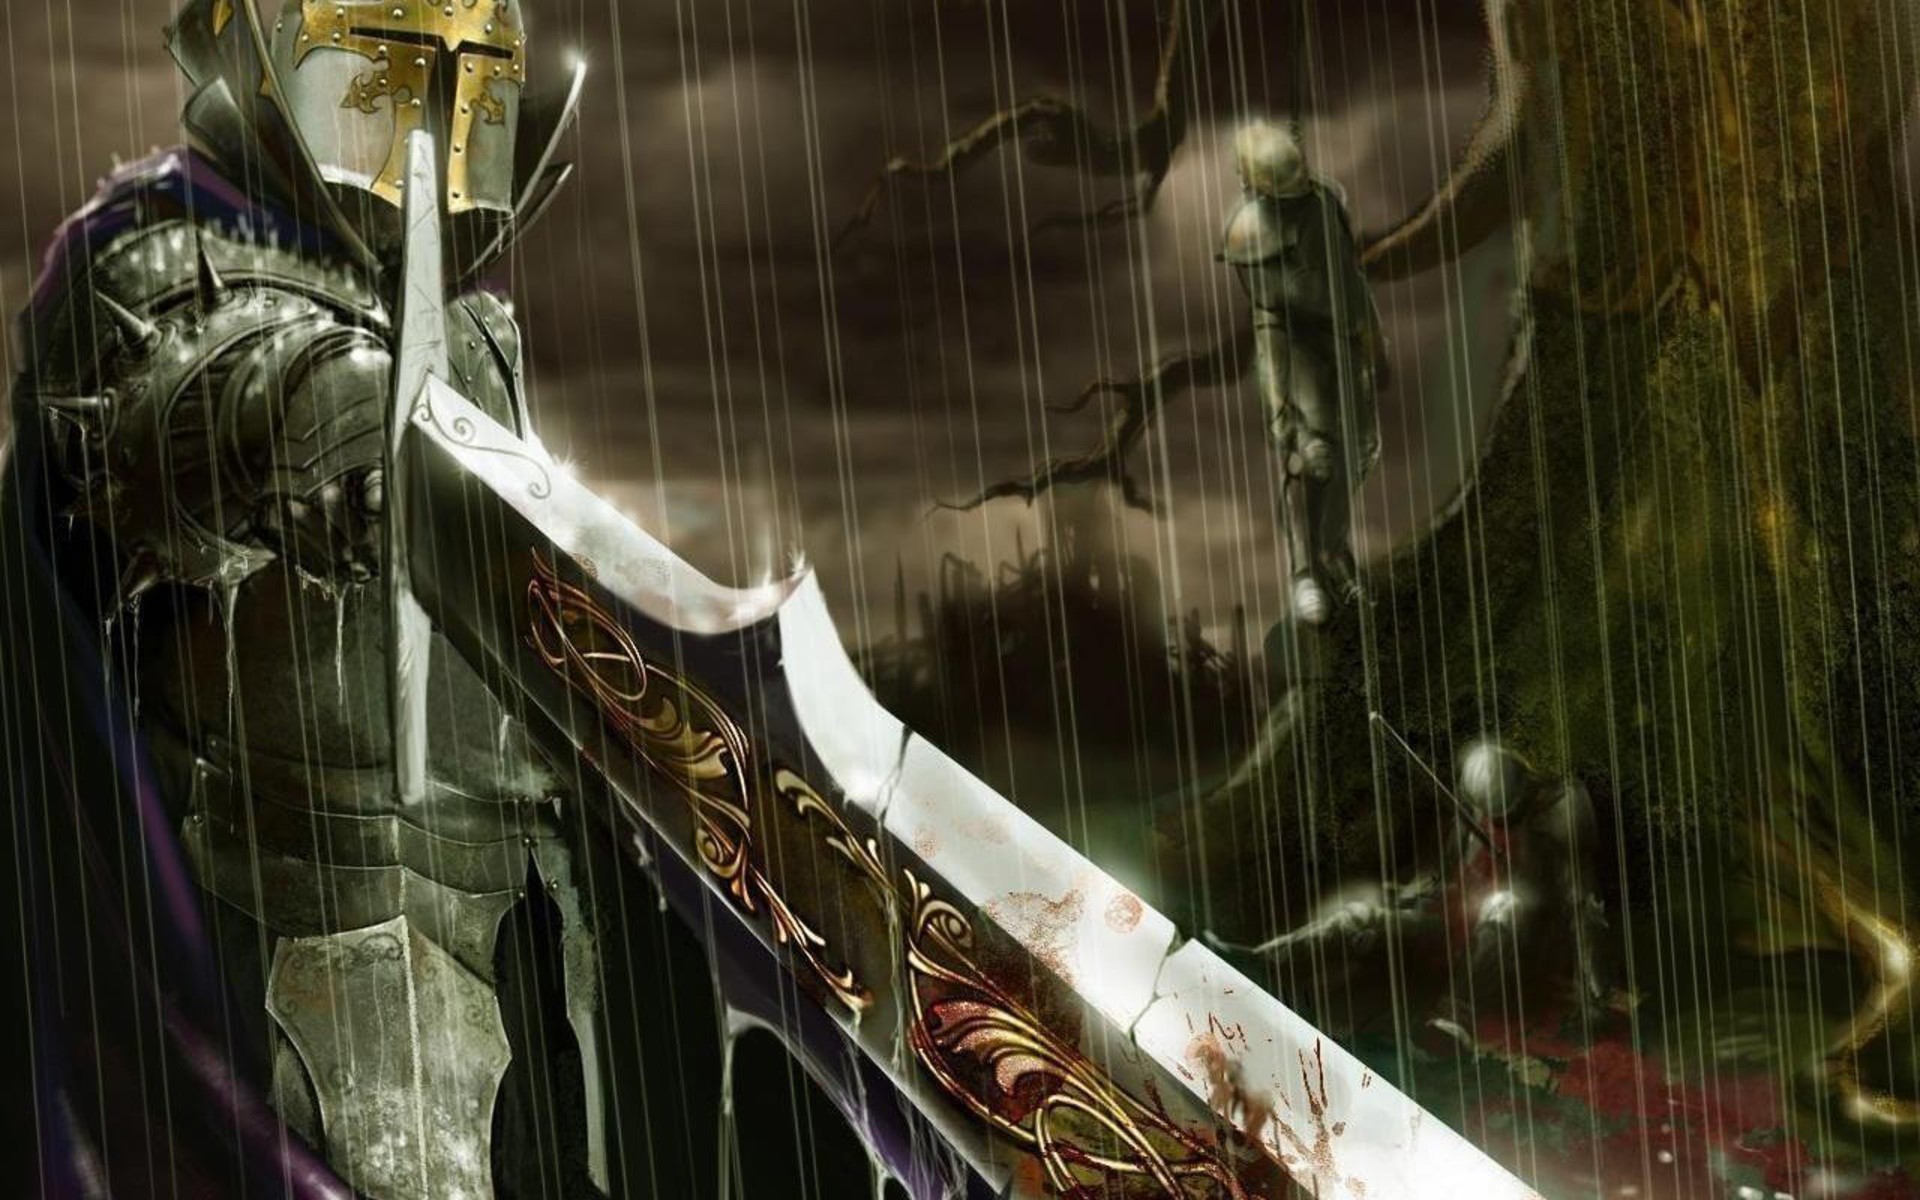 rain, knights, swords - desktop wallpaper